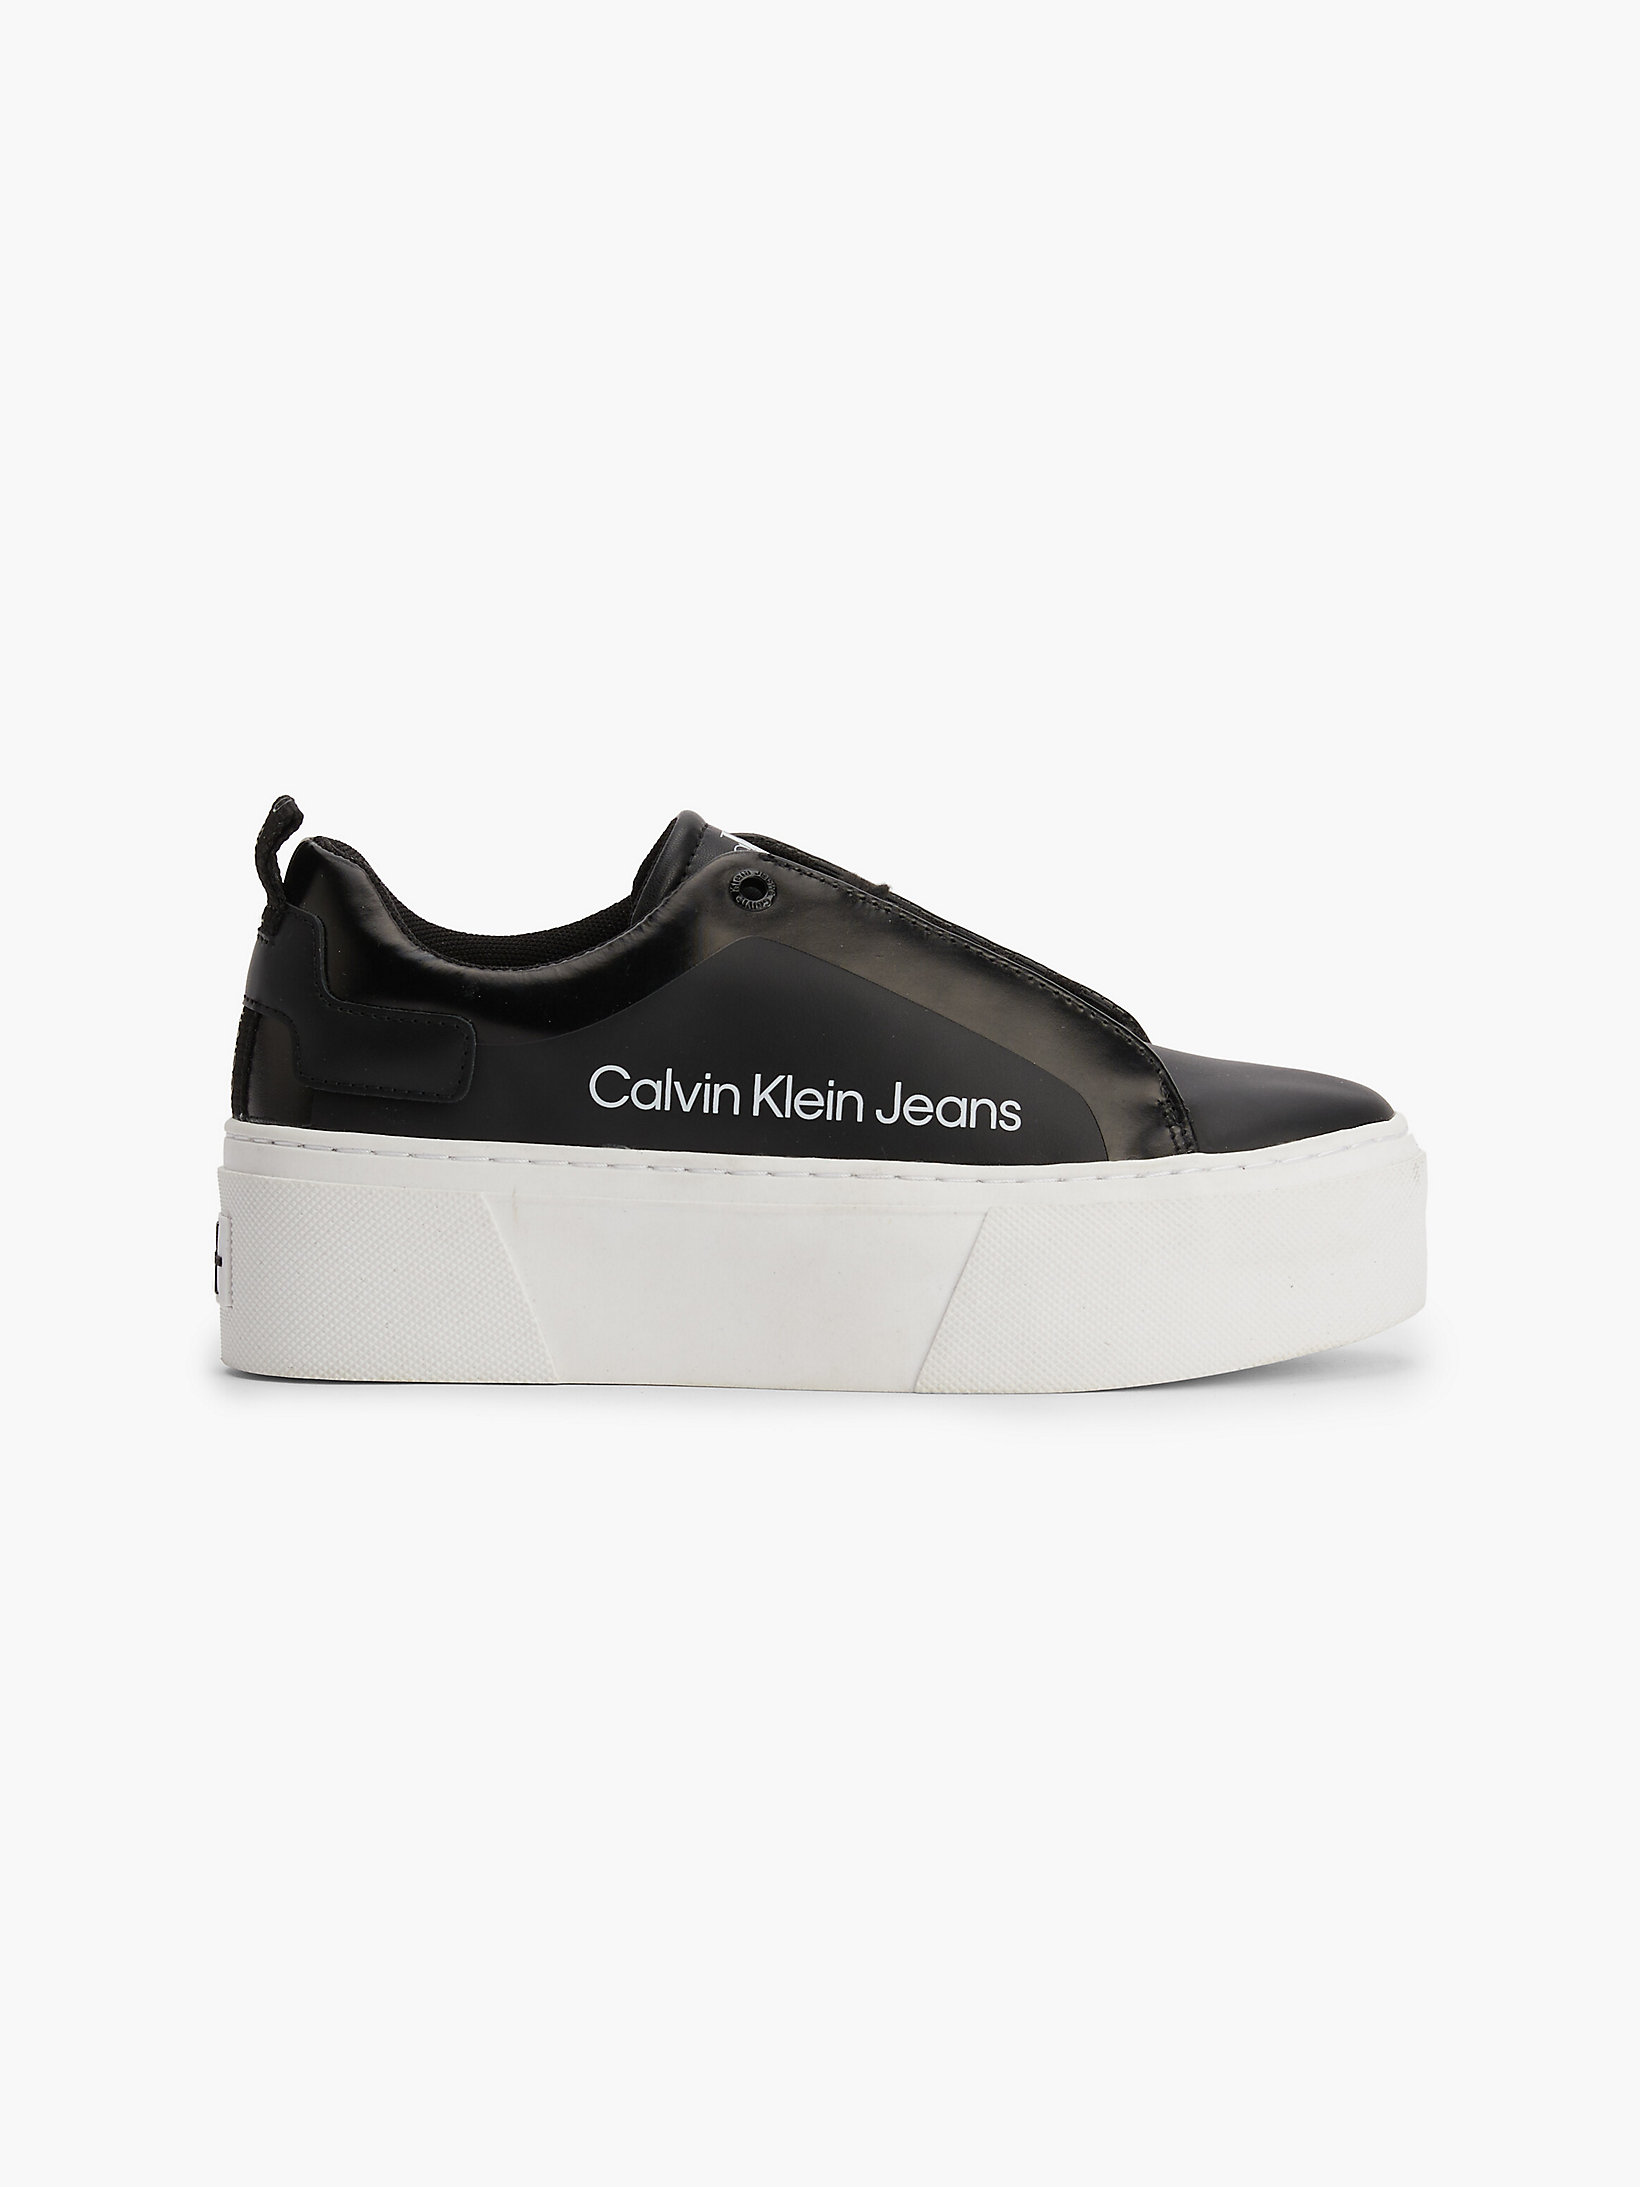 Black > Plateau-Sneakers Aus Leder > undefined Damen - Calvin Klein